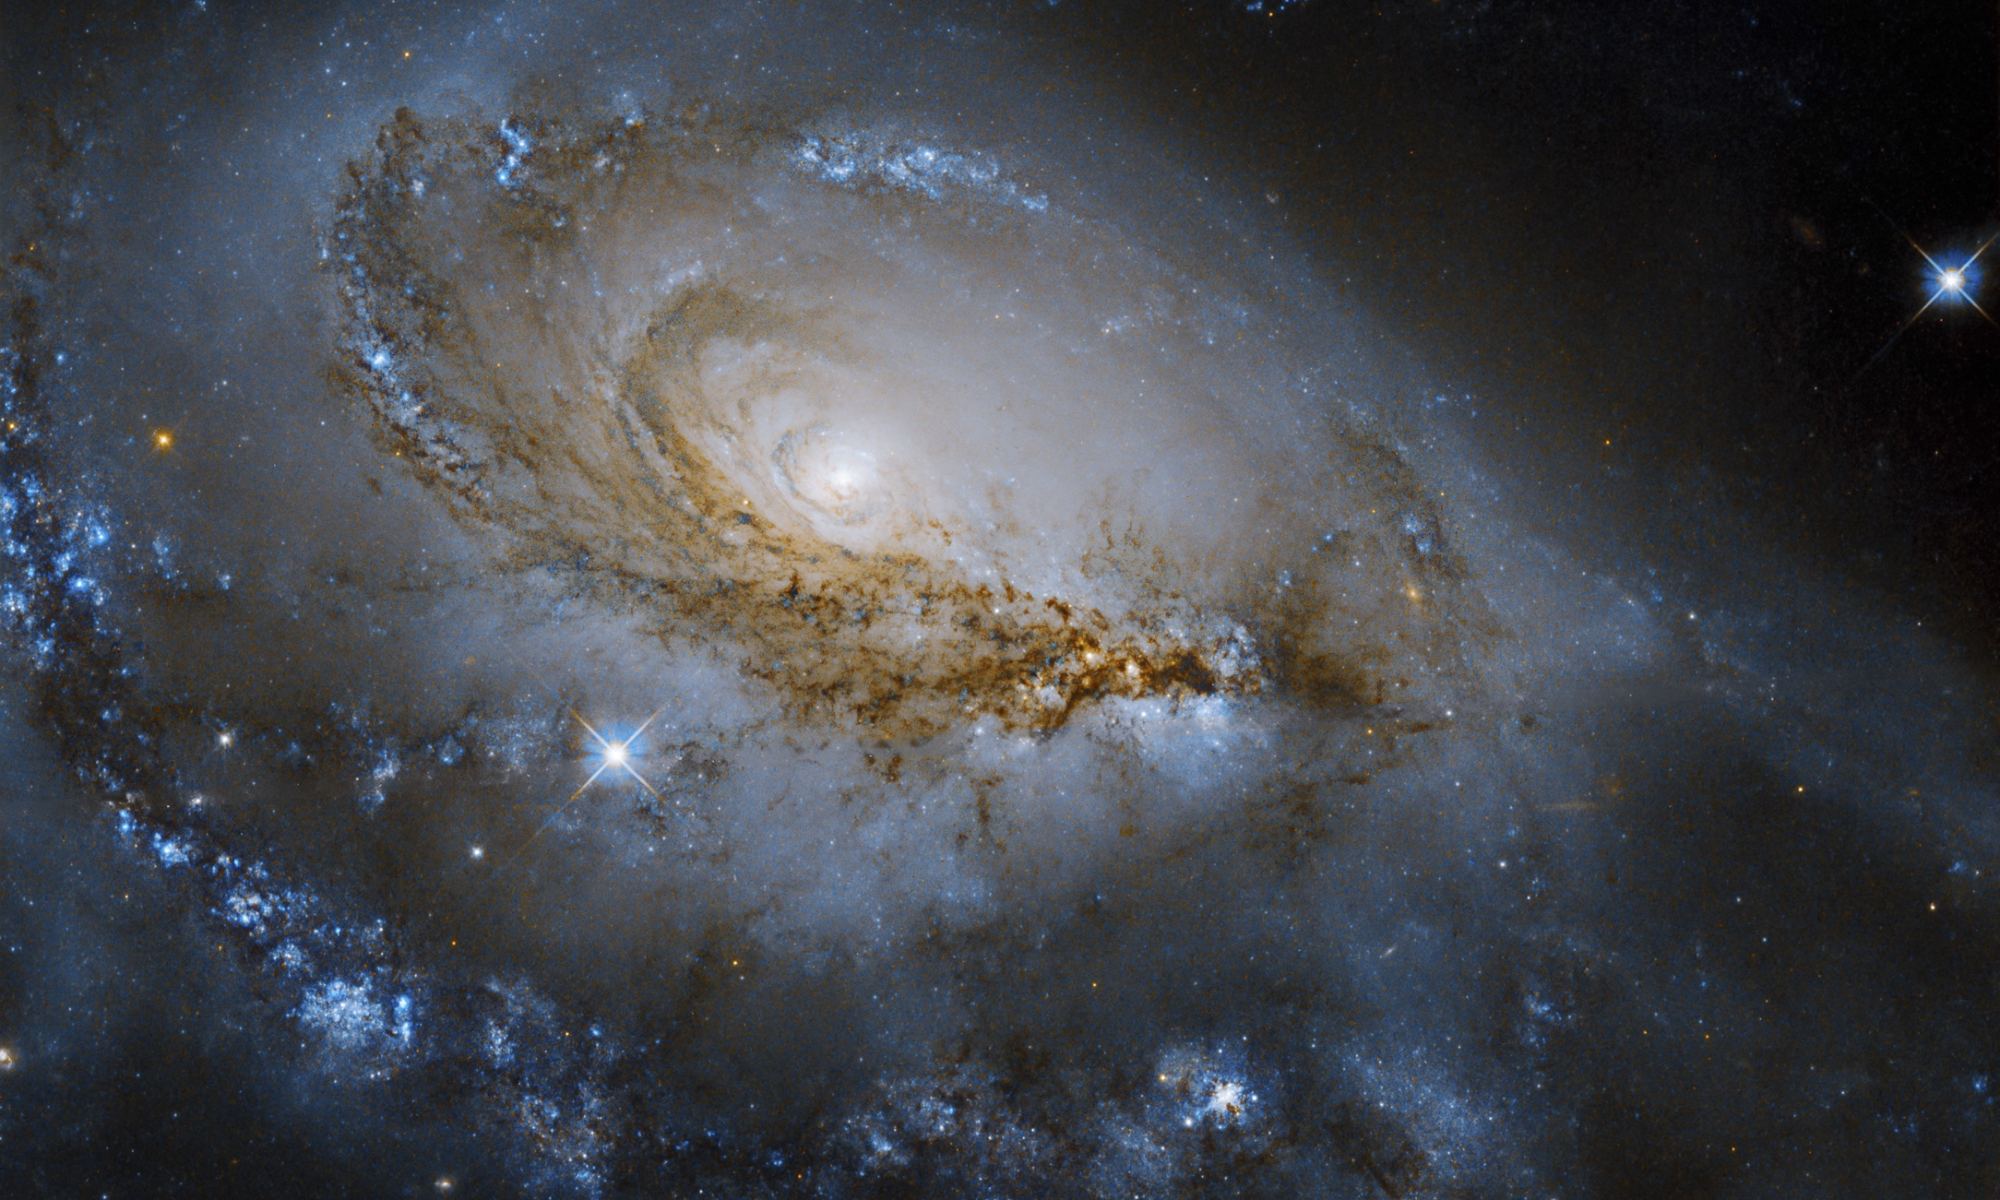 фото телескопа хаббл высокого качества